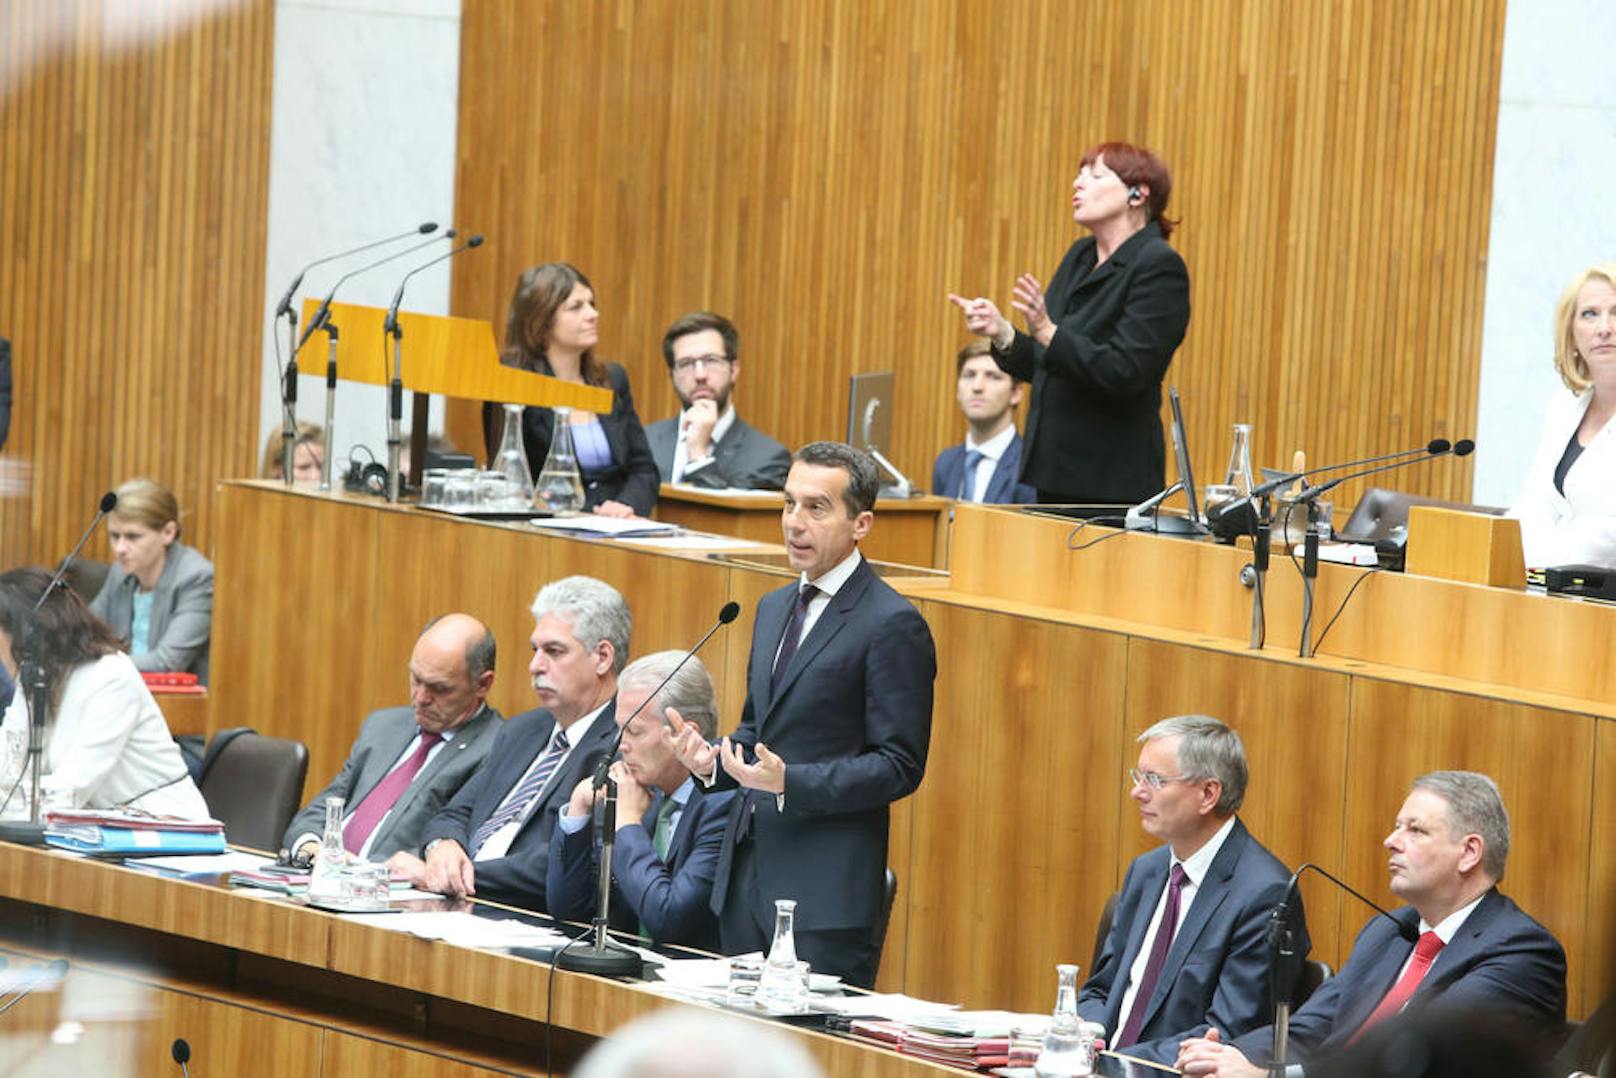 Nach Werner Faymanns Rücktritt als Bundeskanzler und SPÖ-Chef übernahm Kern die Rolle. Hier zu sehen bei seiner ersten Rede im Nationalrat.